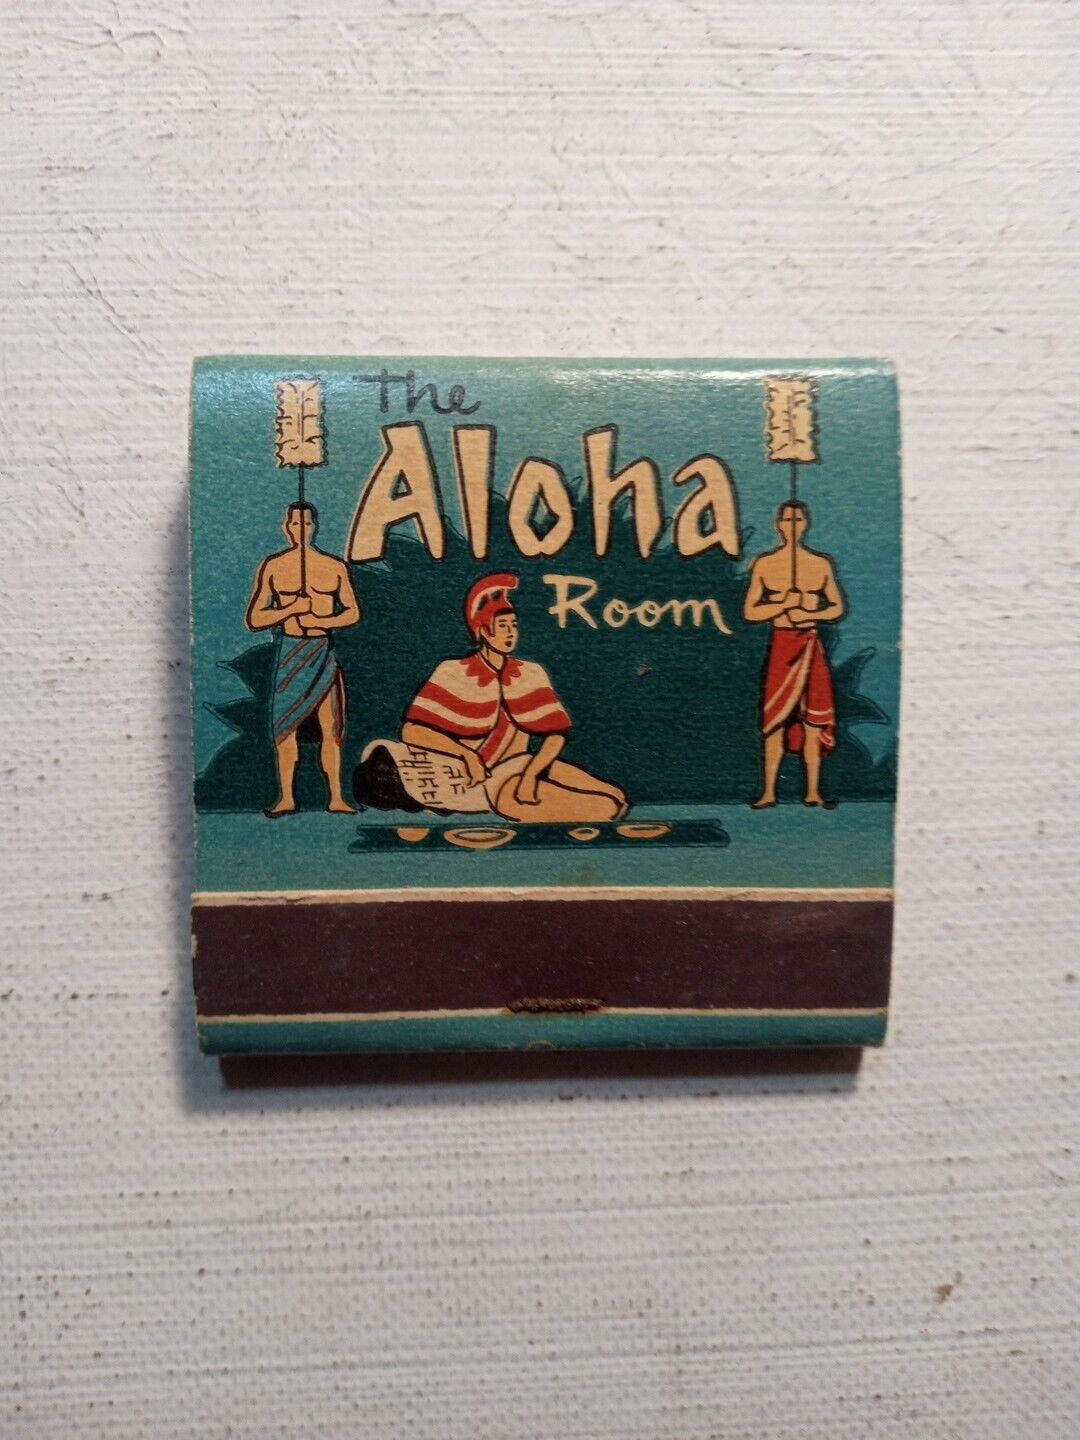 Aloha Room Heathcliff Hotel Portland Or. Vintage Matchbook Unstruck Missing One 